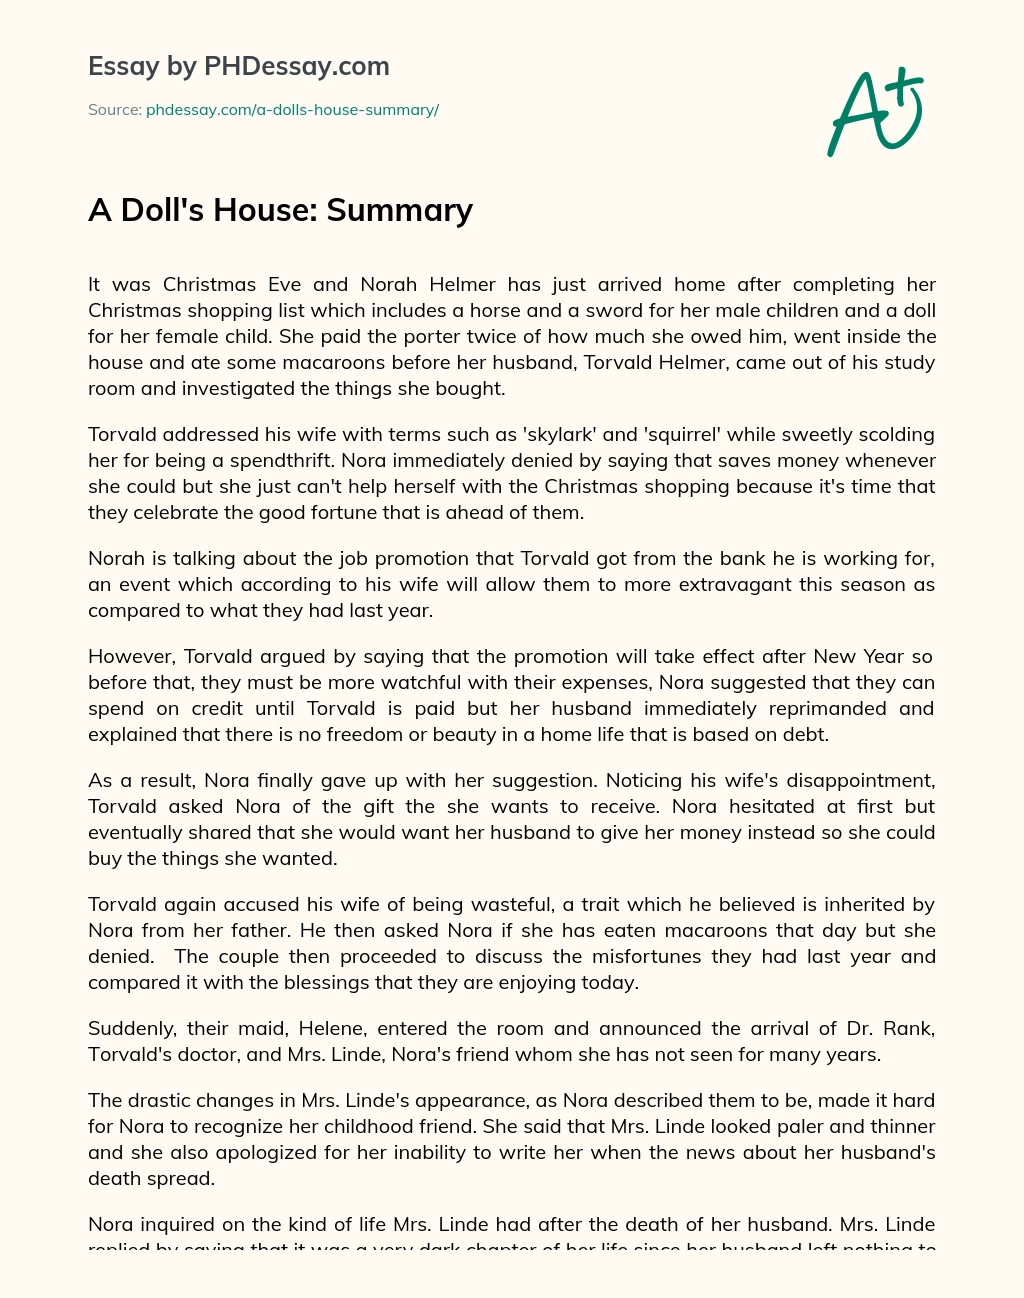 A Doll’s House: Summary essay